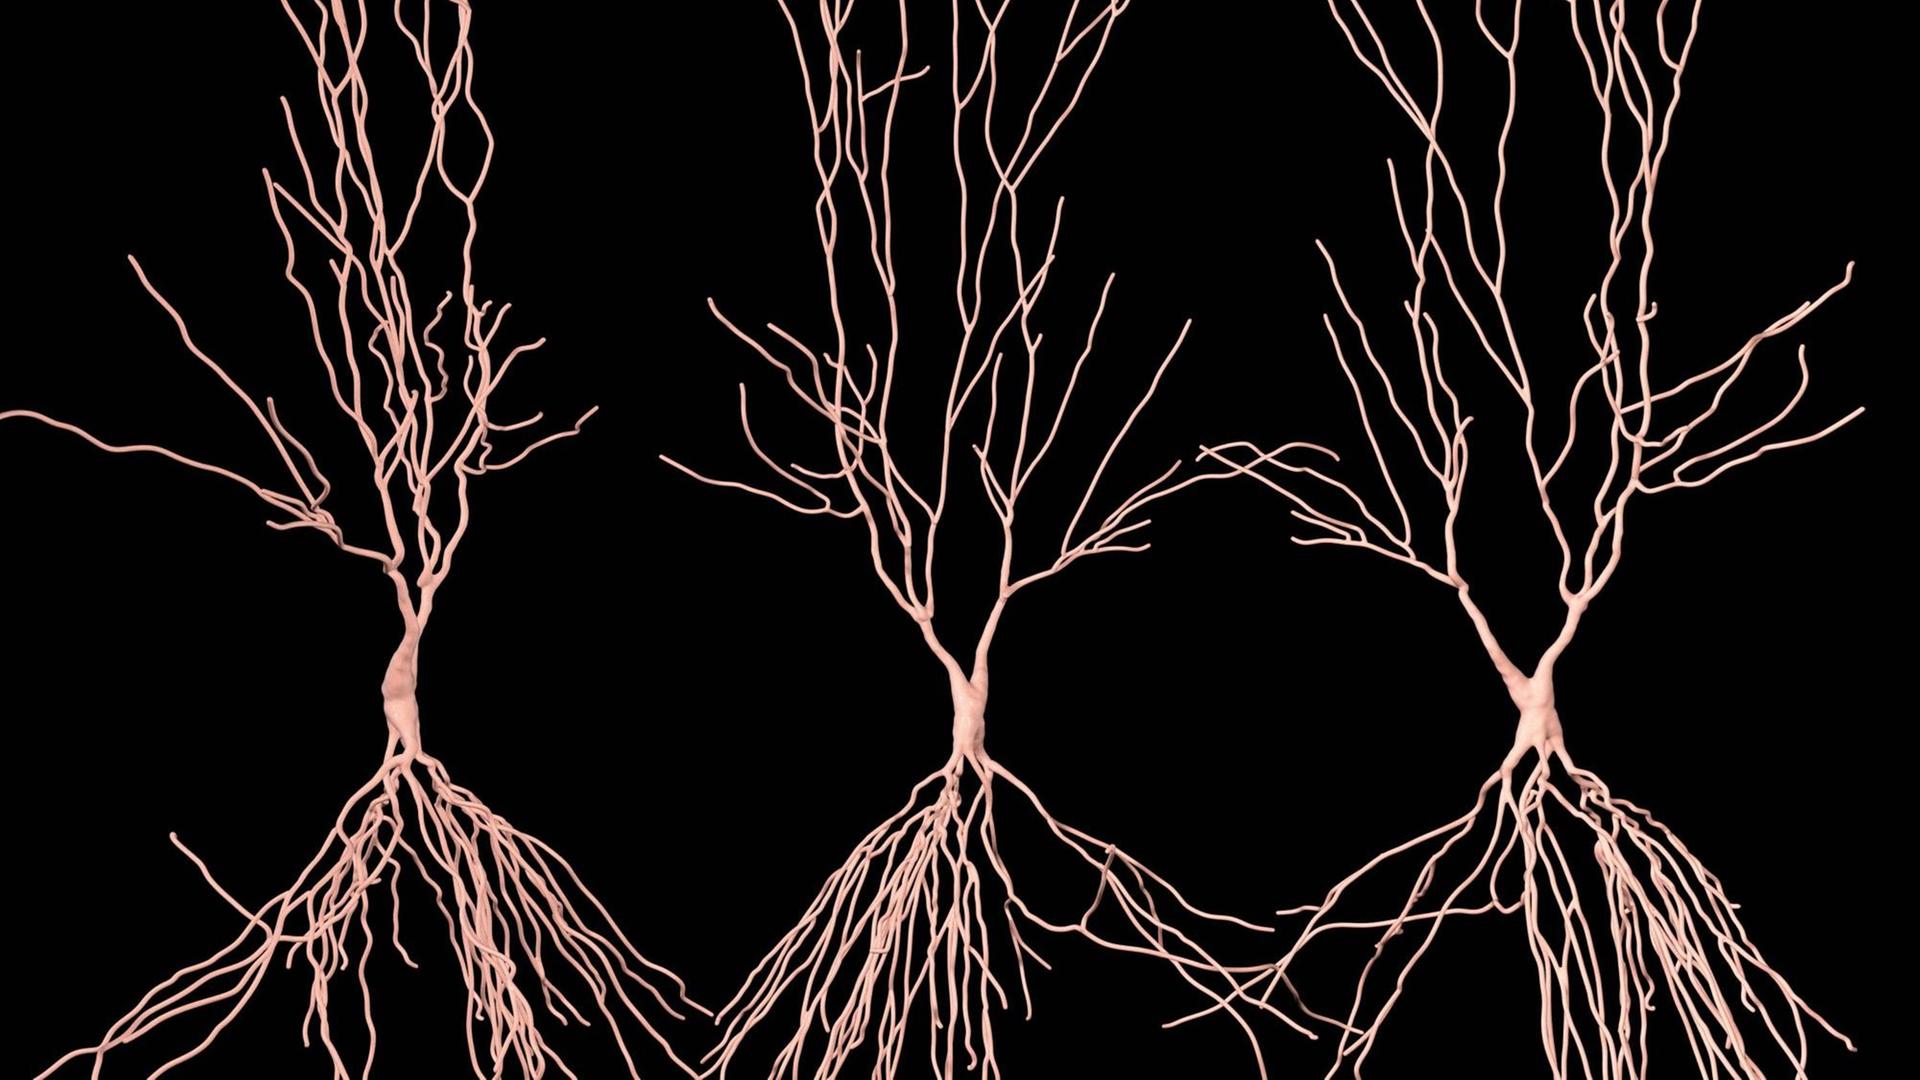 Computer-Illustration von Hippocampus Neuronen: Der Hippocampus im menschenlichen Gehirn ist für das Langzeitgedächtnis zuständig